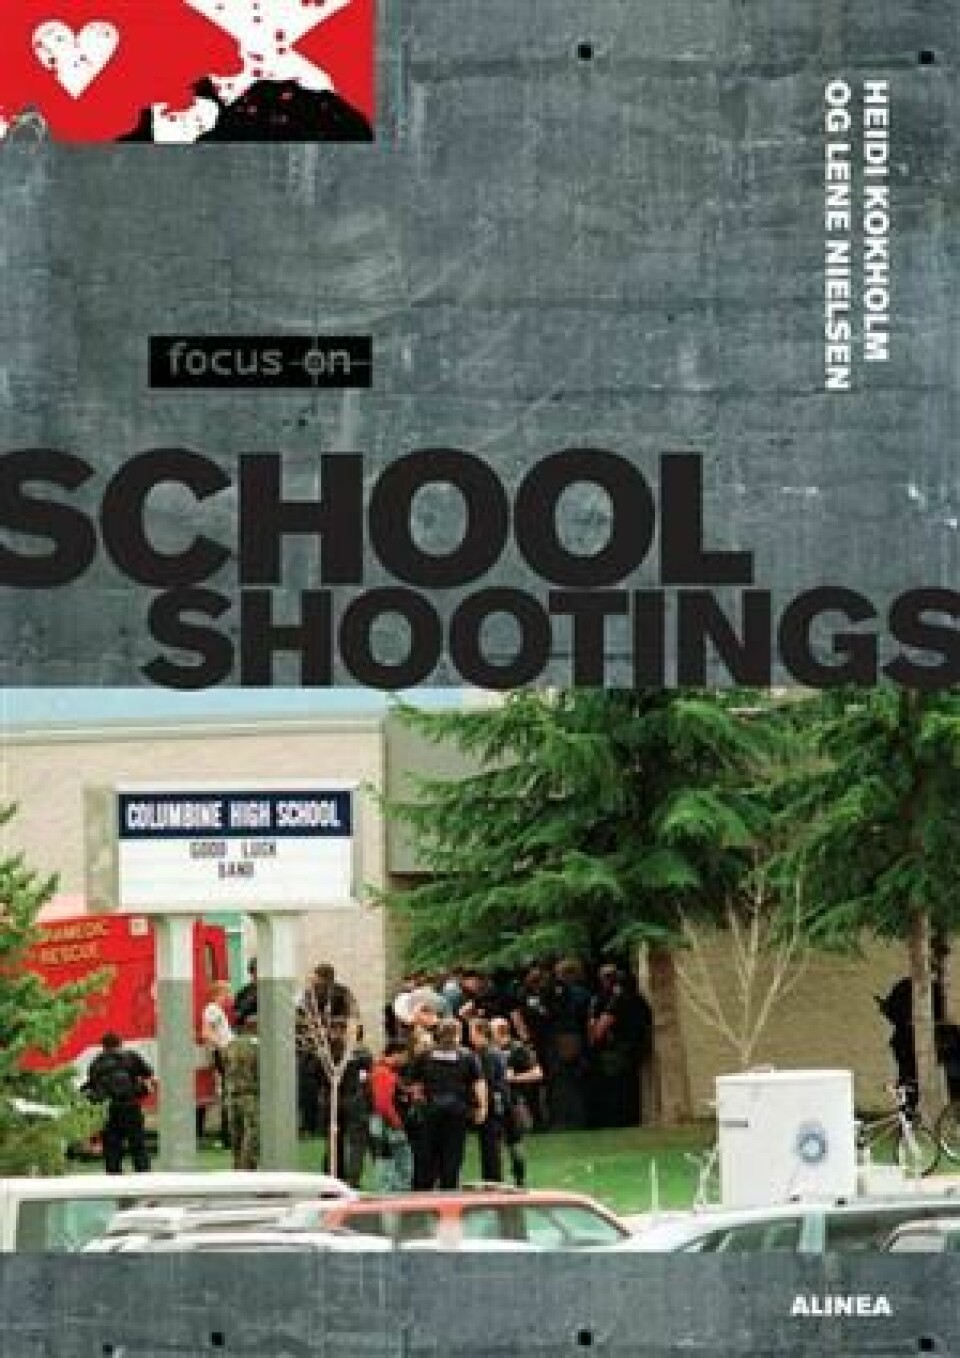 Focus on School Shootings